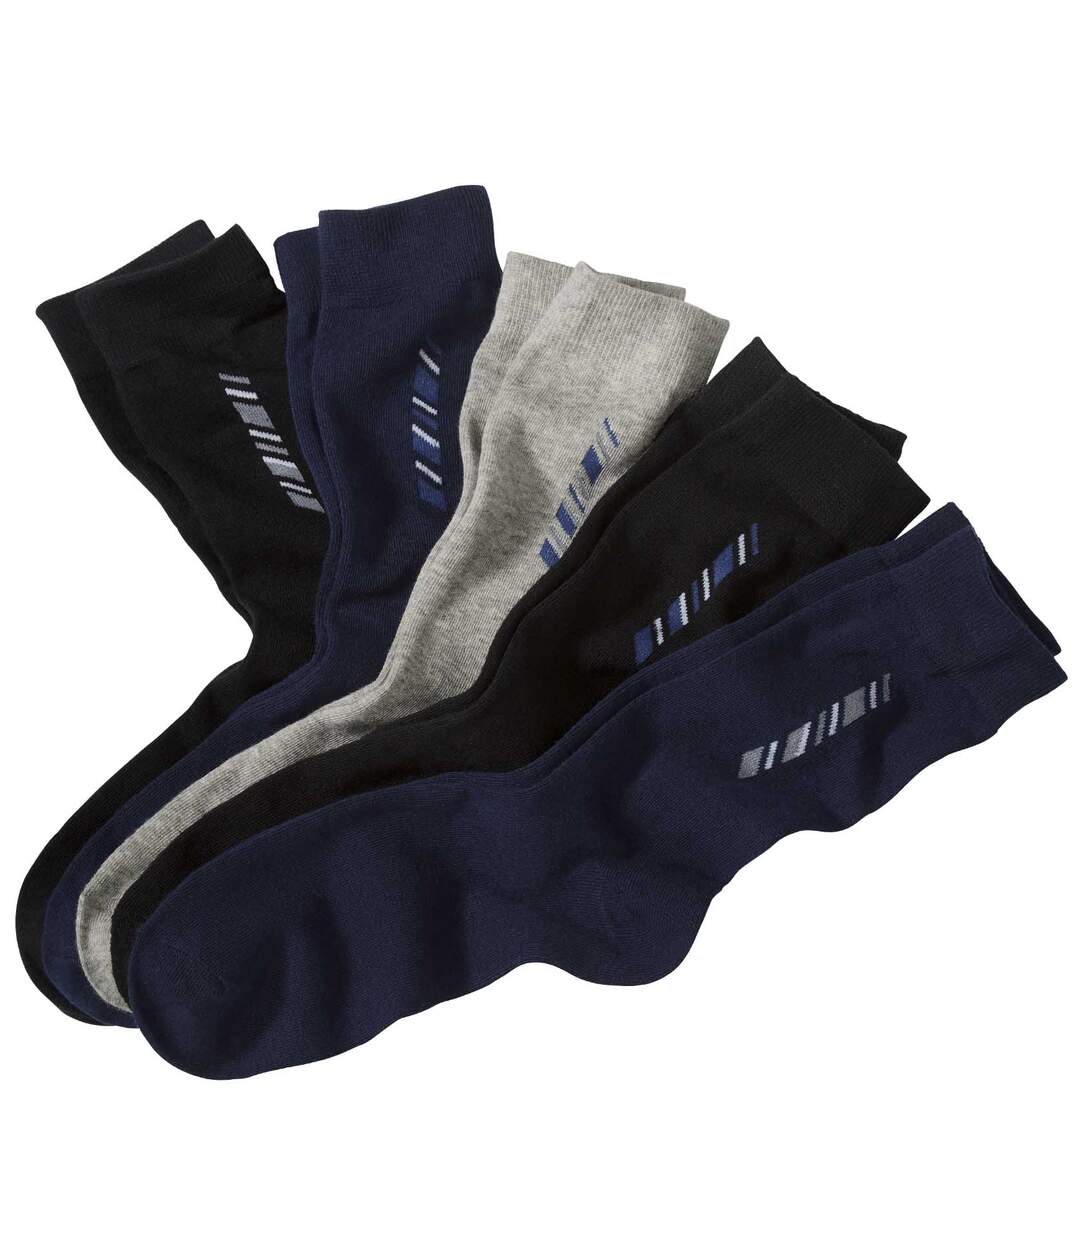 Pack of 5 Pairs of Men's Patterned Socks - Black Navy Grey Atlas For Men